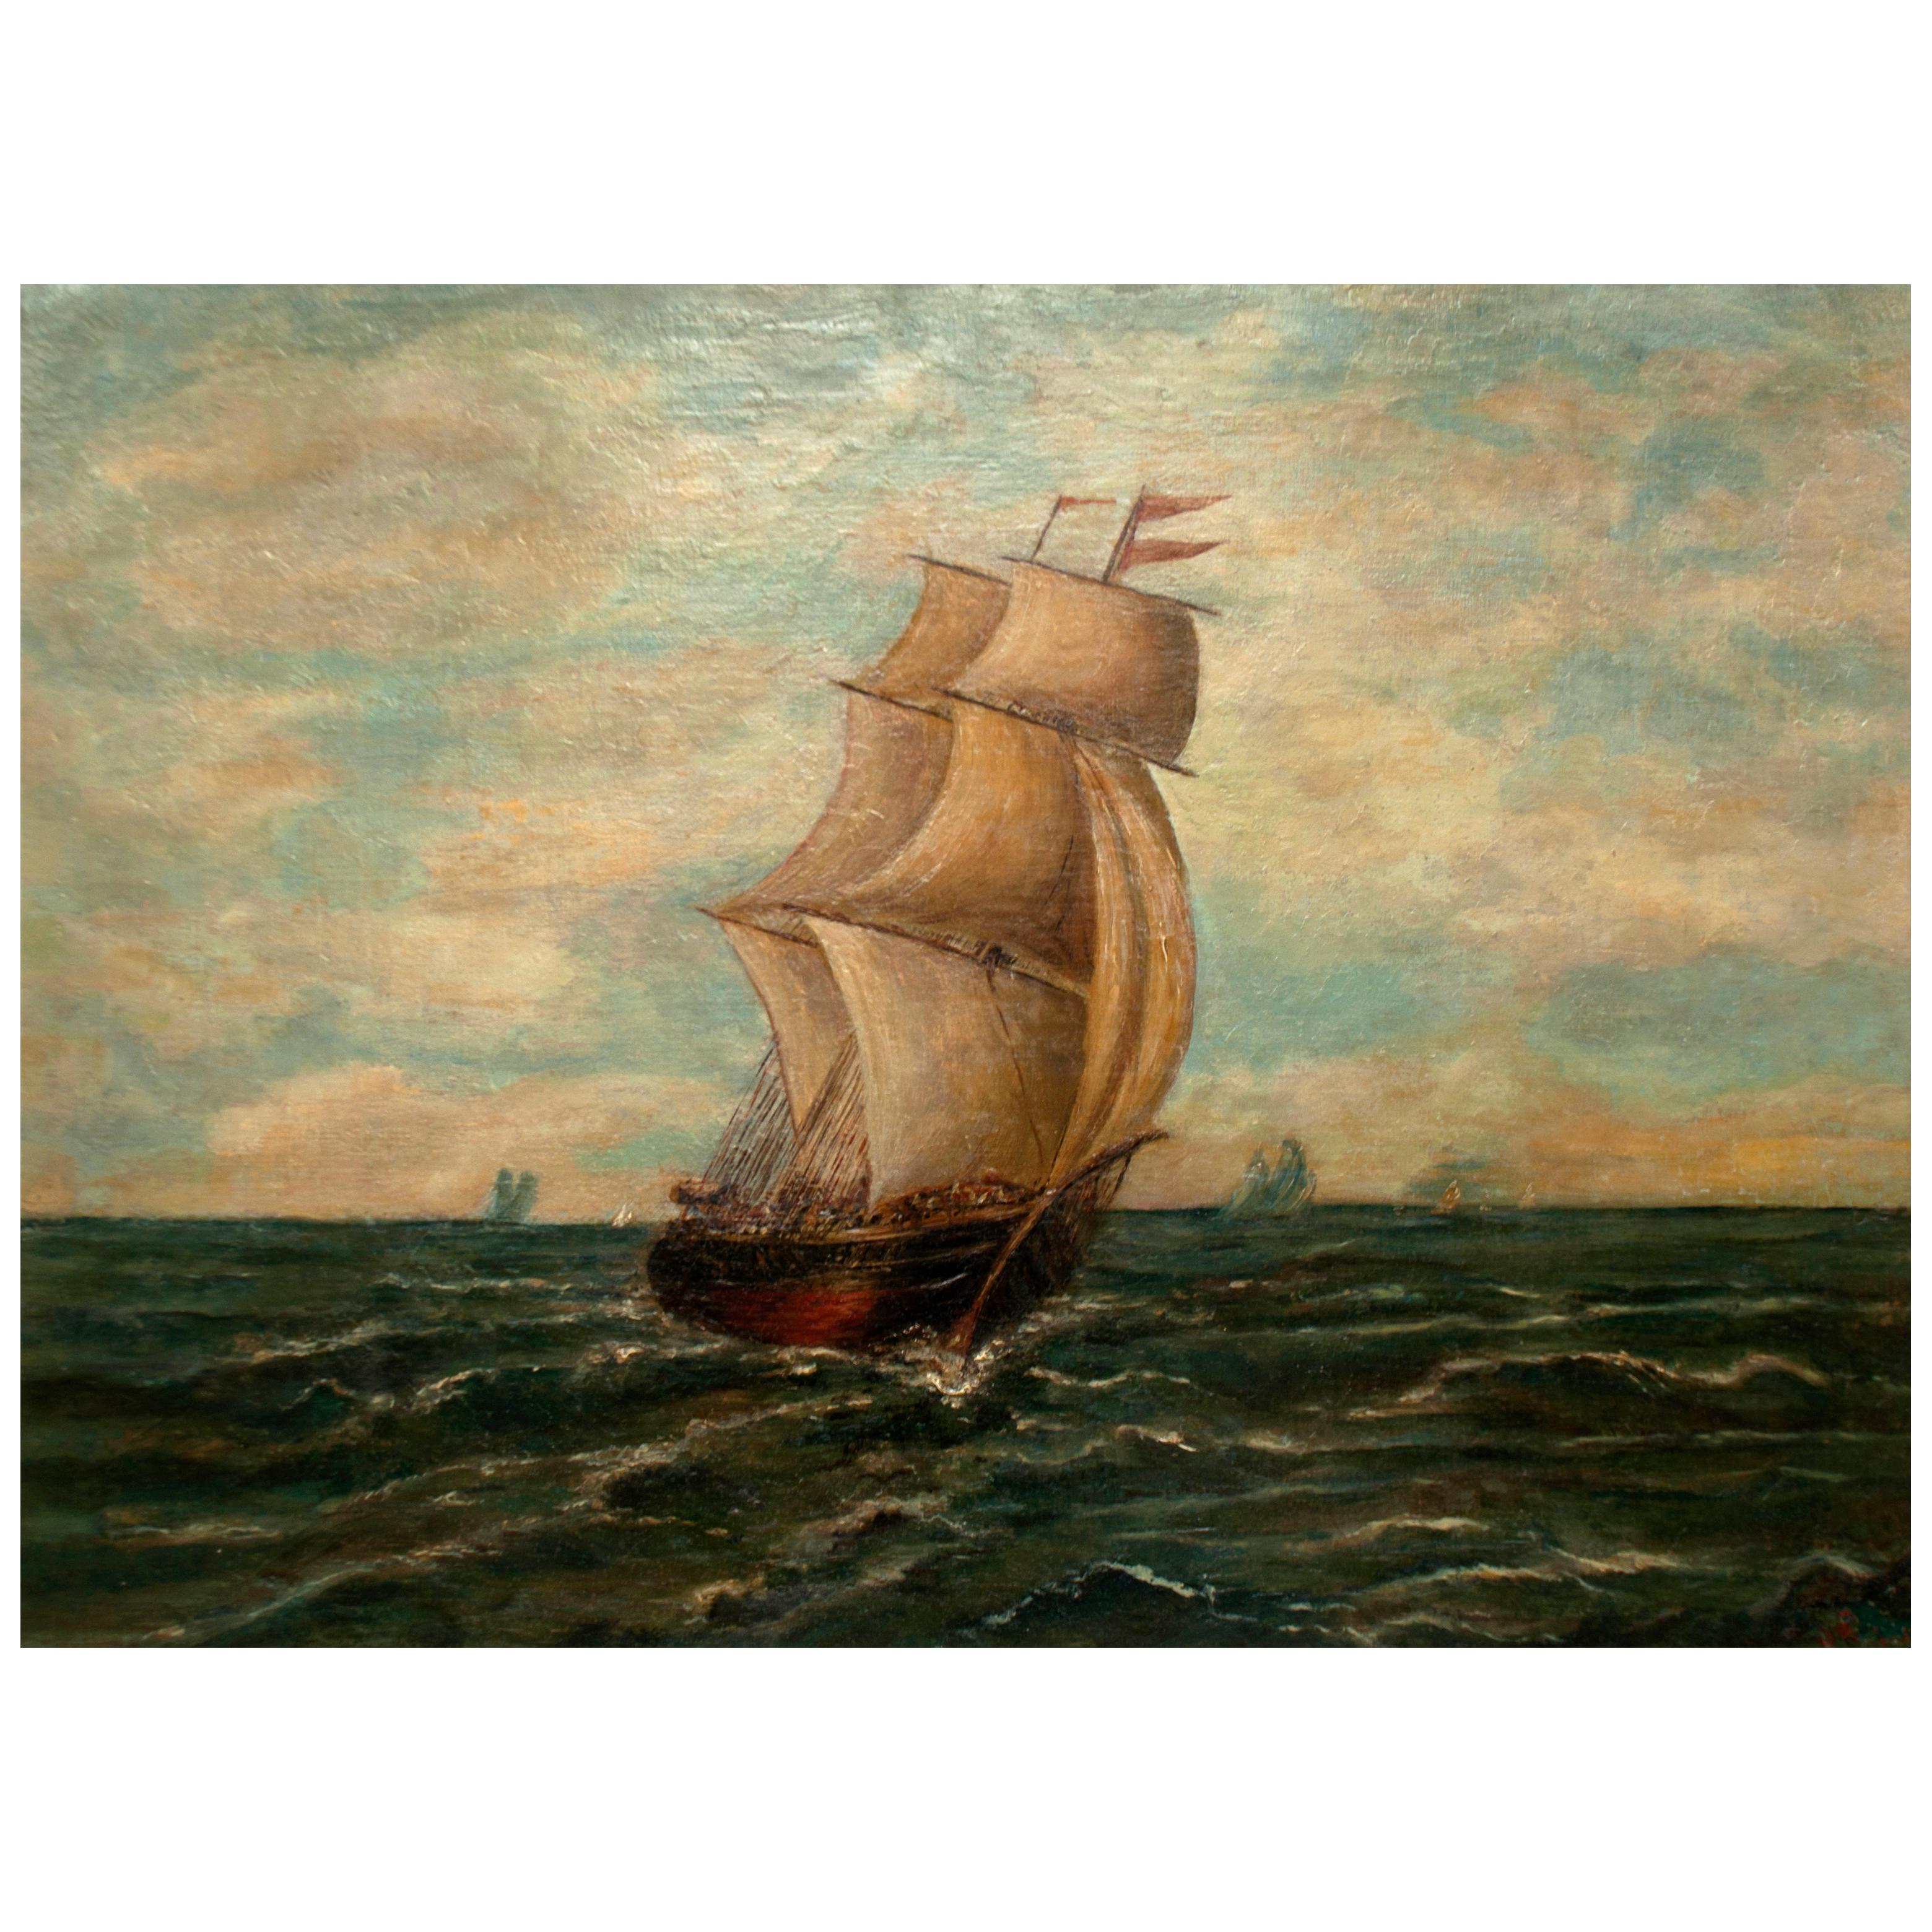 Cette huile sur toile du 19e siècle, d'un réalisme classique, représente la majesté d'un grand voilier sur la mer, dans un ciel bleu clair rempli de cumulus blancs. Un vent doux crée de l'écume blanche lorsque les vagues se brisent contre la proue